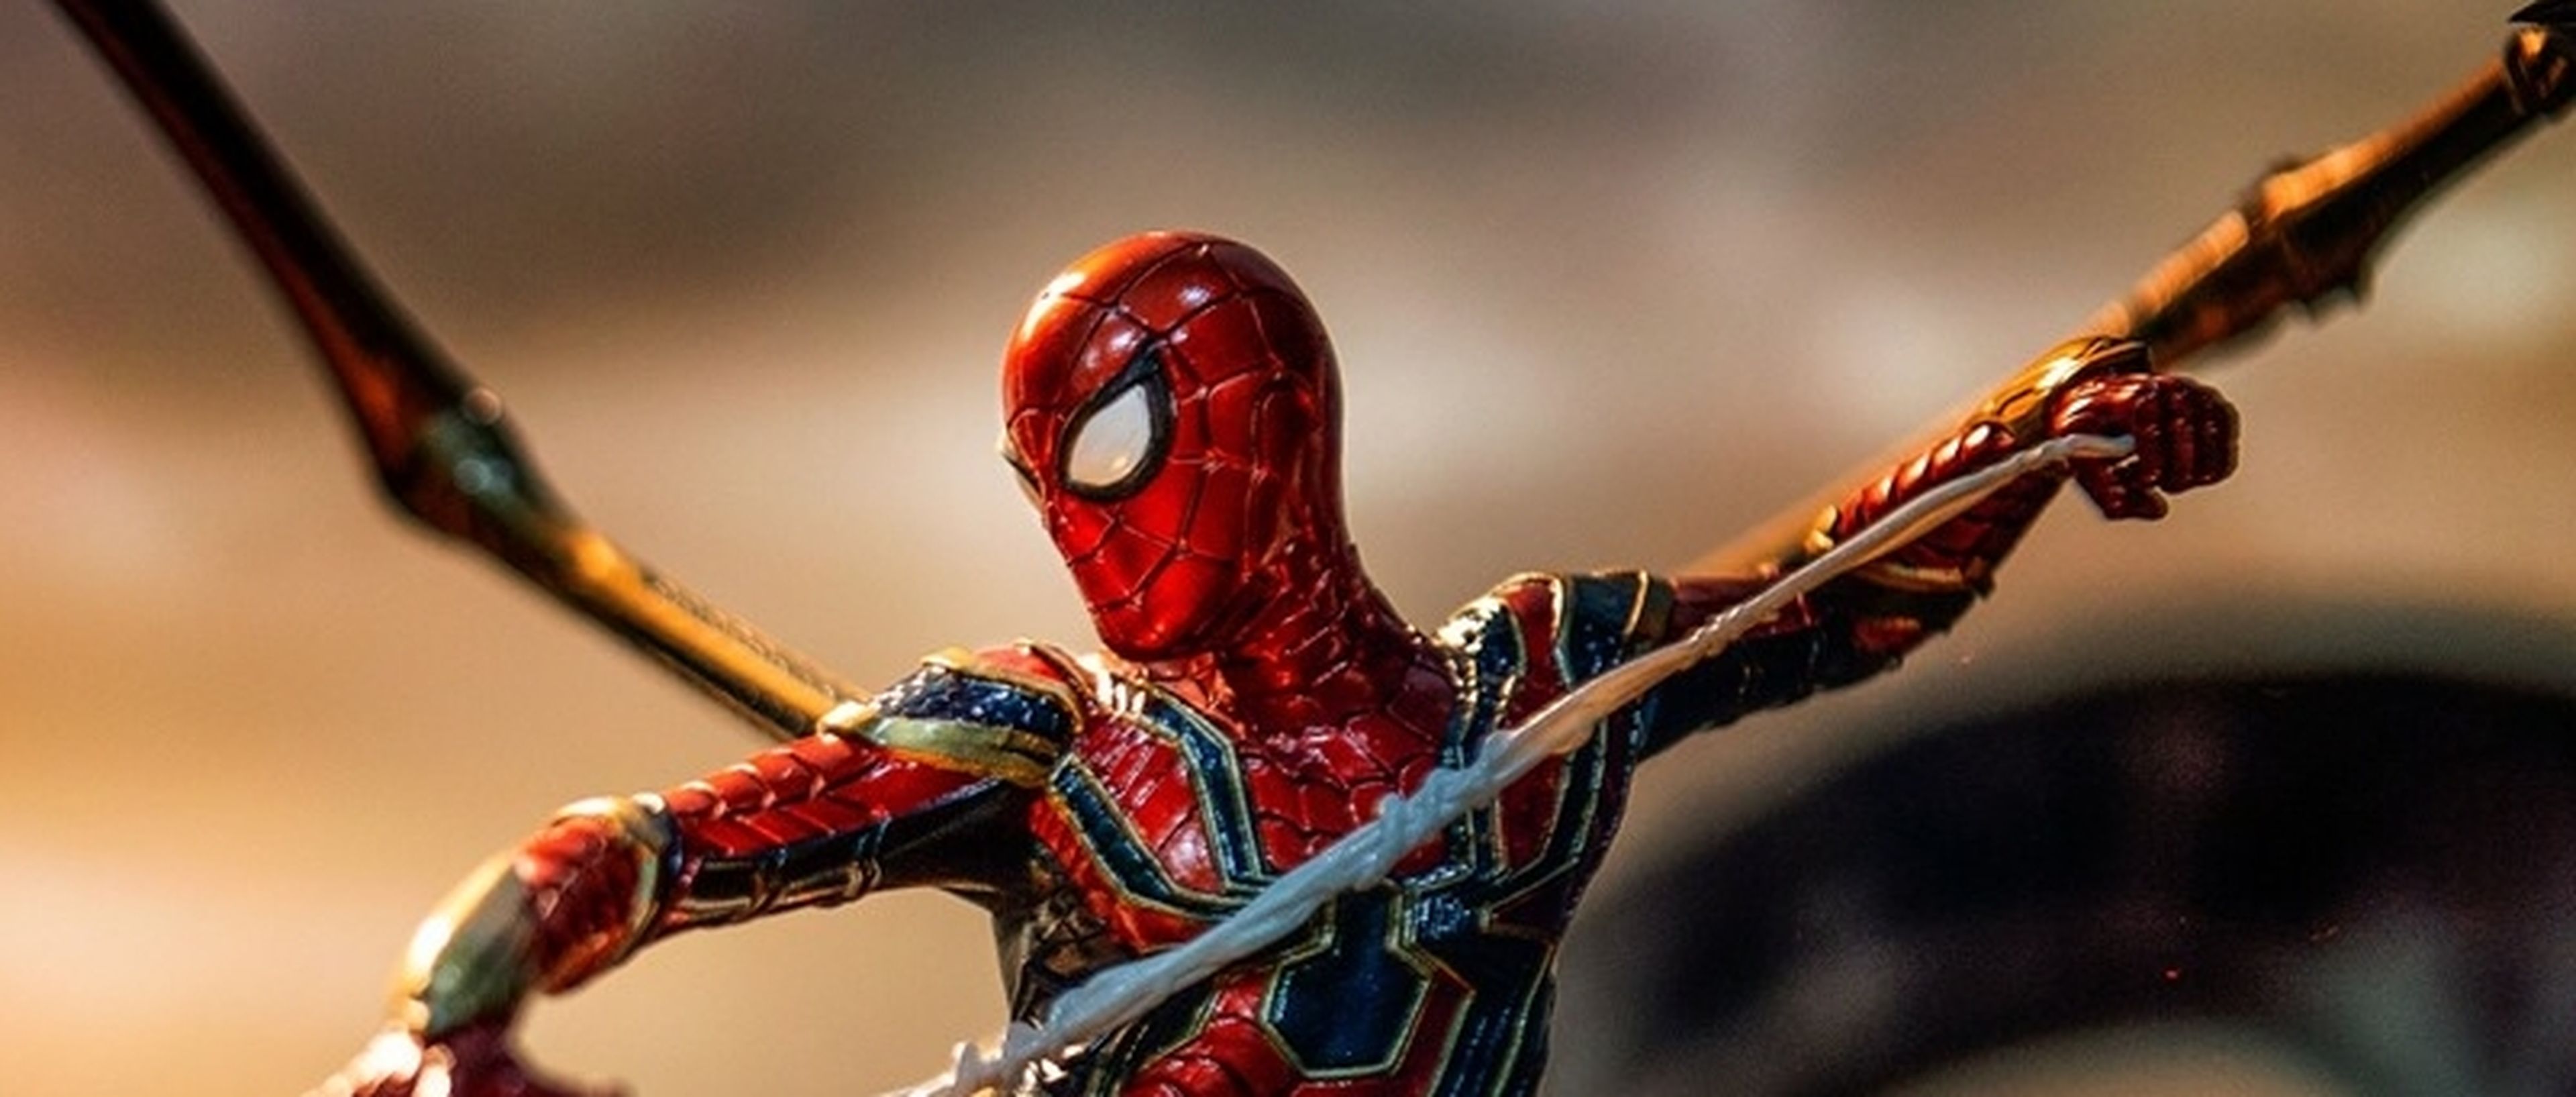 Vengadores Endgame - La espectacular figura de Spider-man con el traje Iron Spider